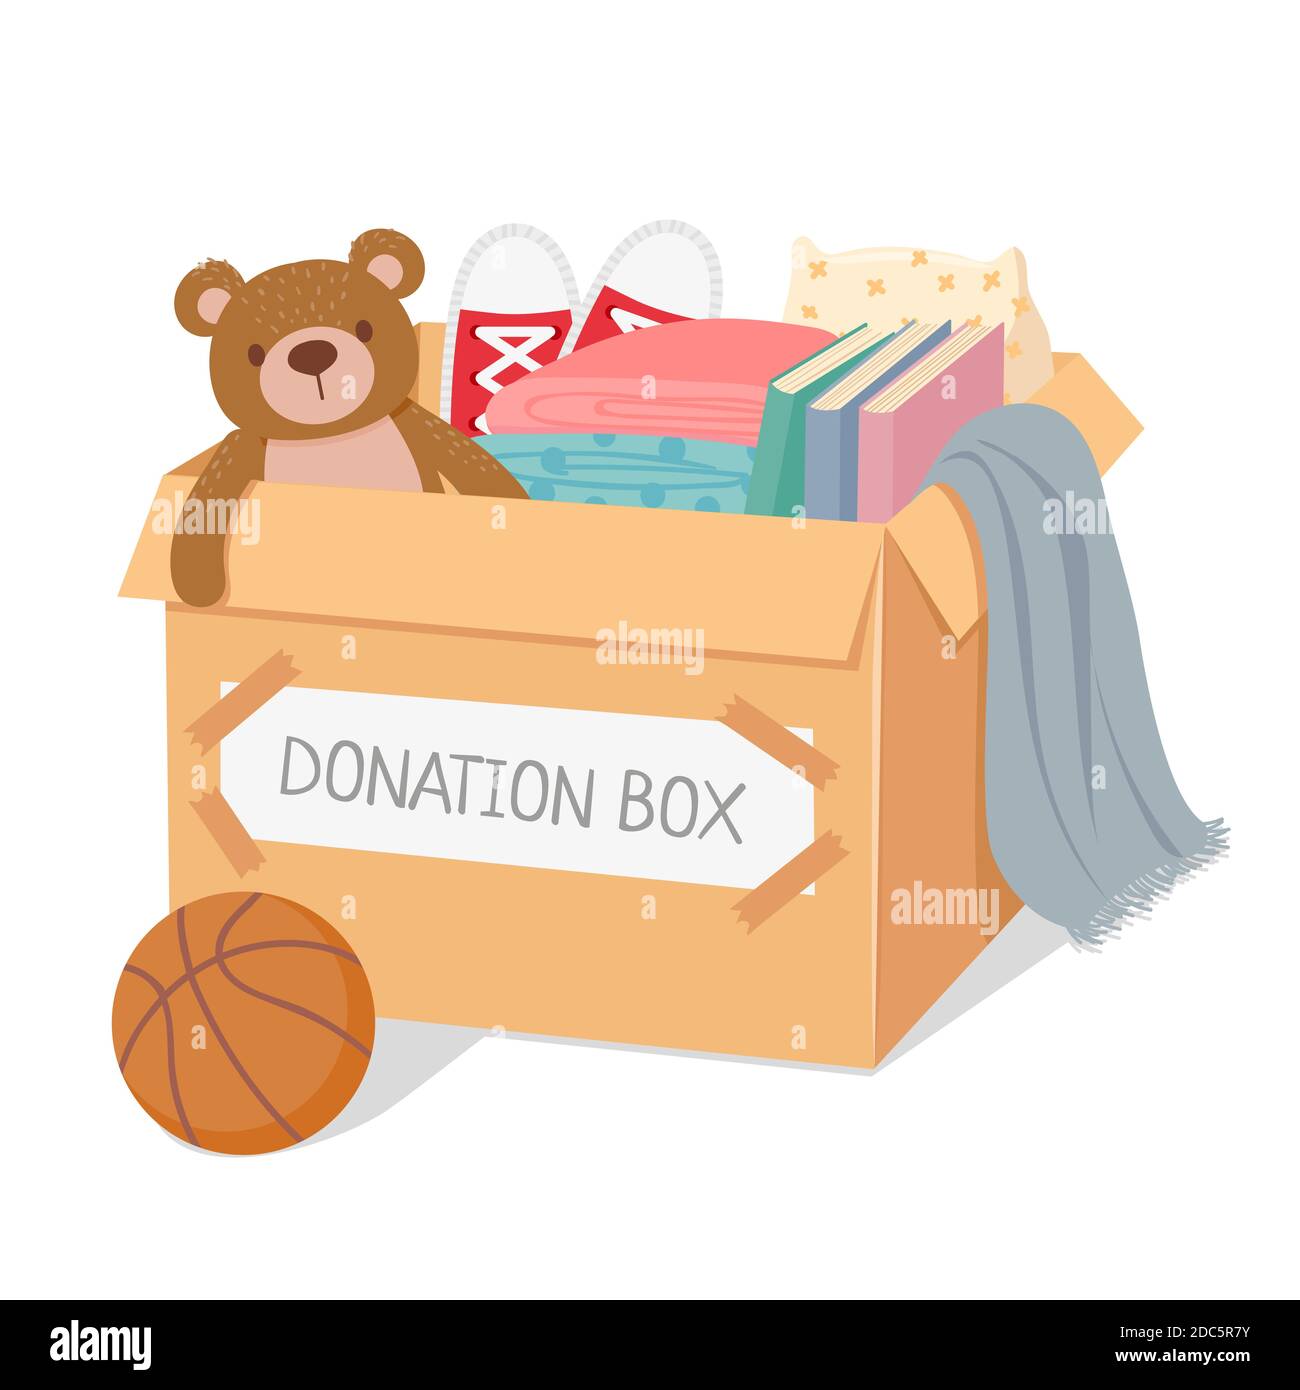 Spendenbox. Wohltätigkeitsorganisation für arme Kinder und Obdachlose. Box gefüllt mit Spielzeug, Bücher und Kleidung. Soziale Betreuung und Großzügigkeit Vektor-Konzept Stock Vektor